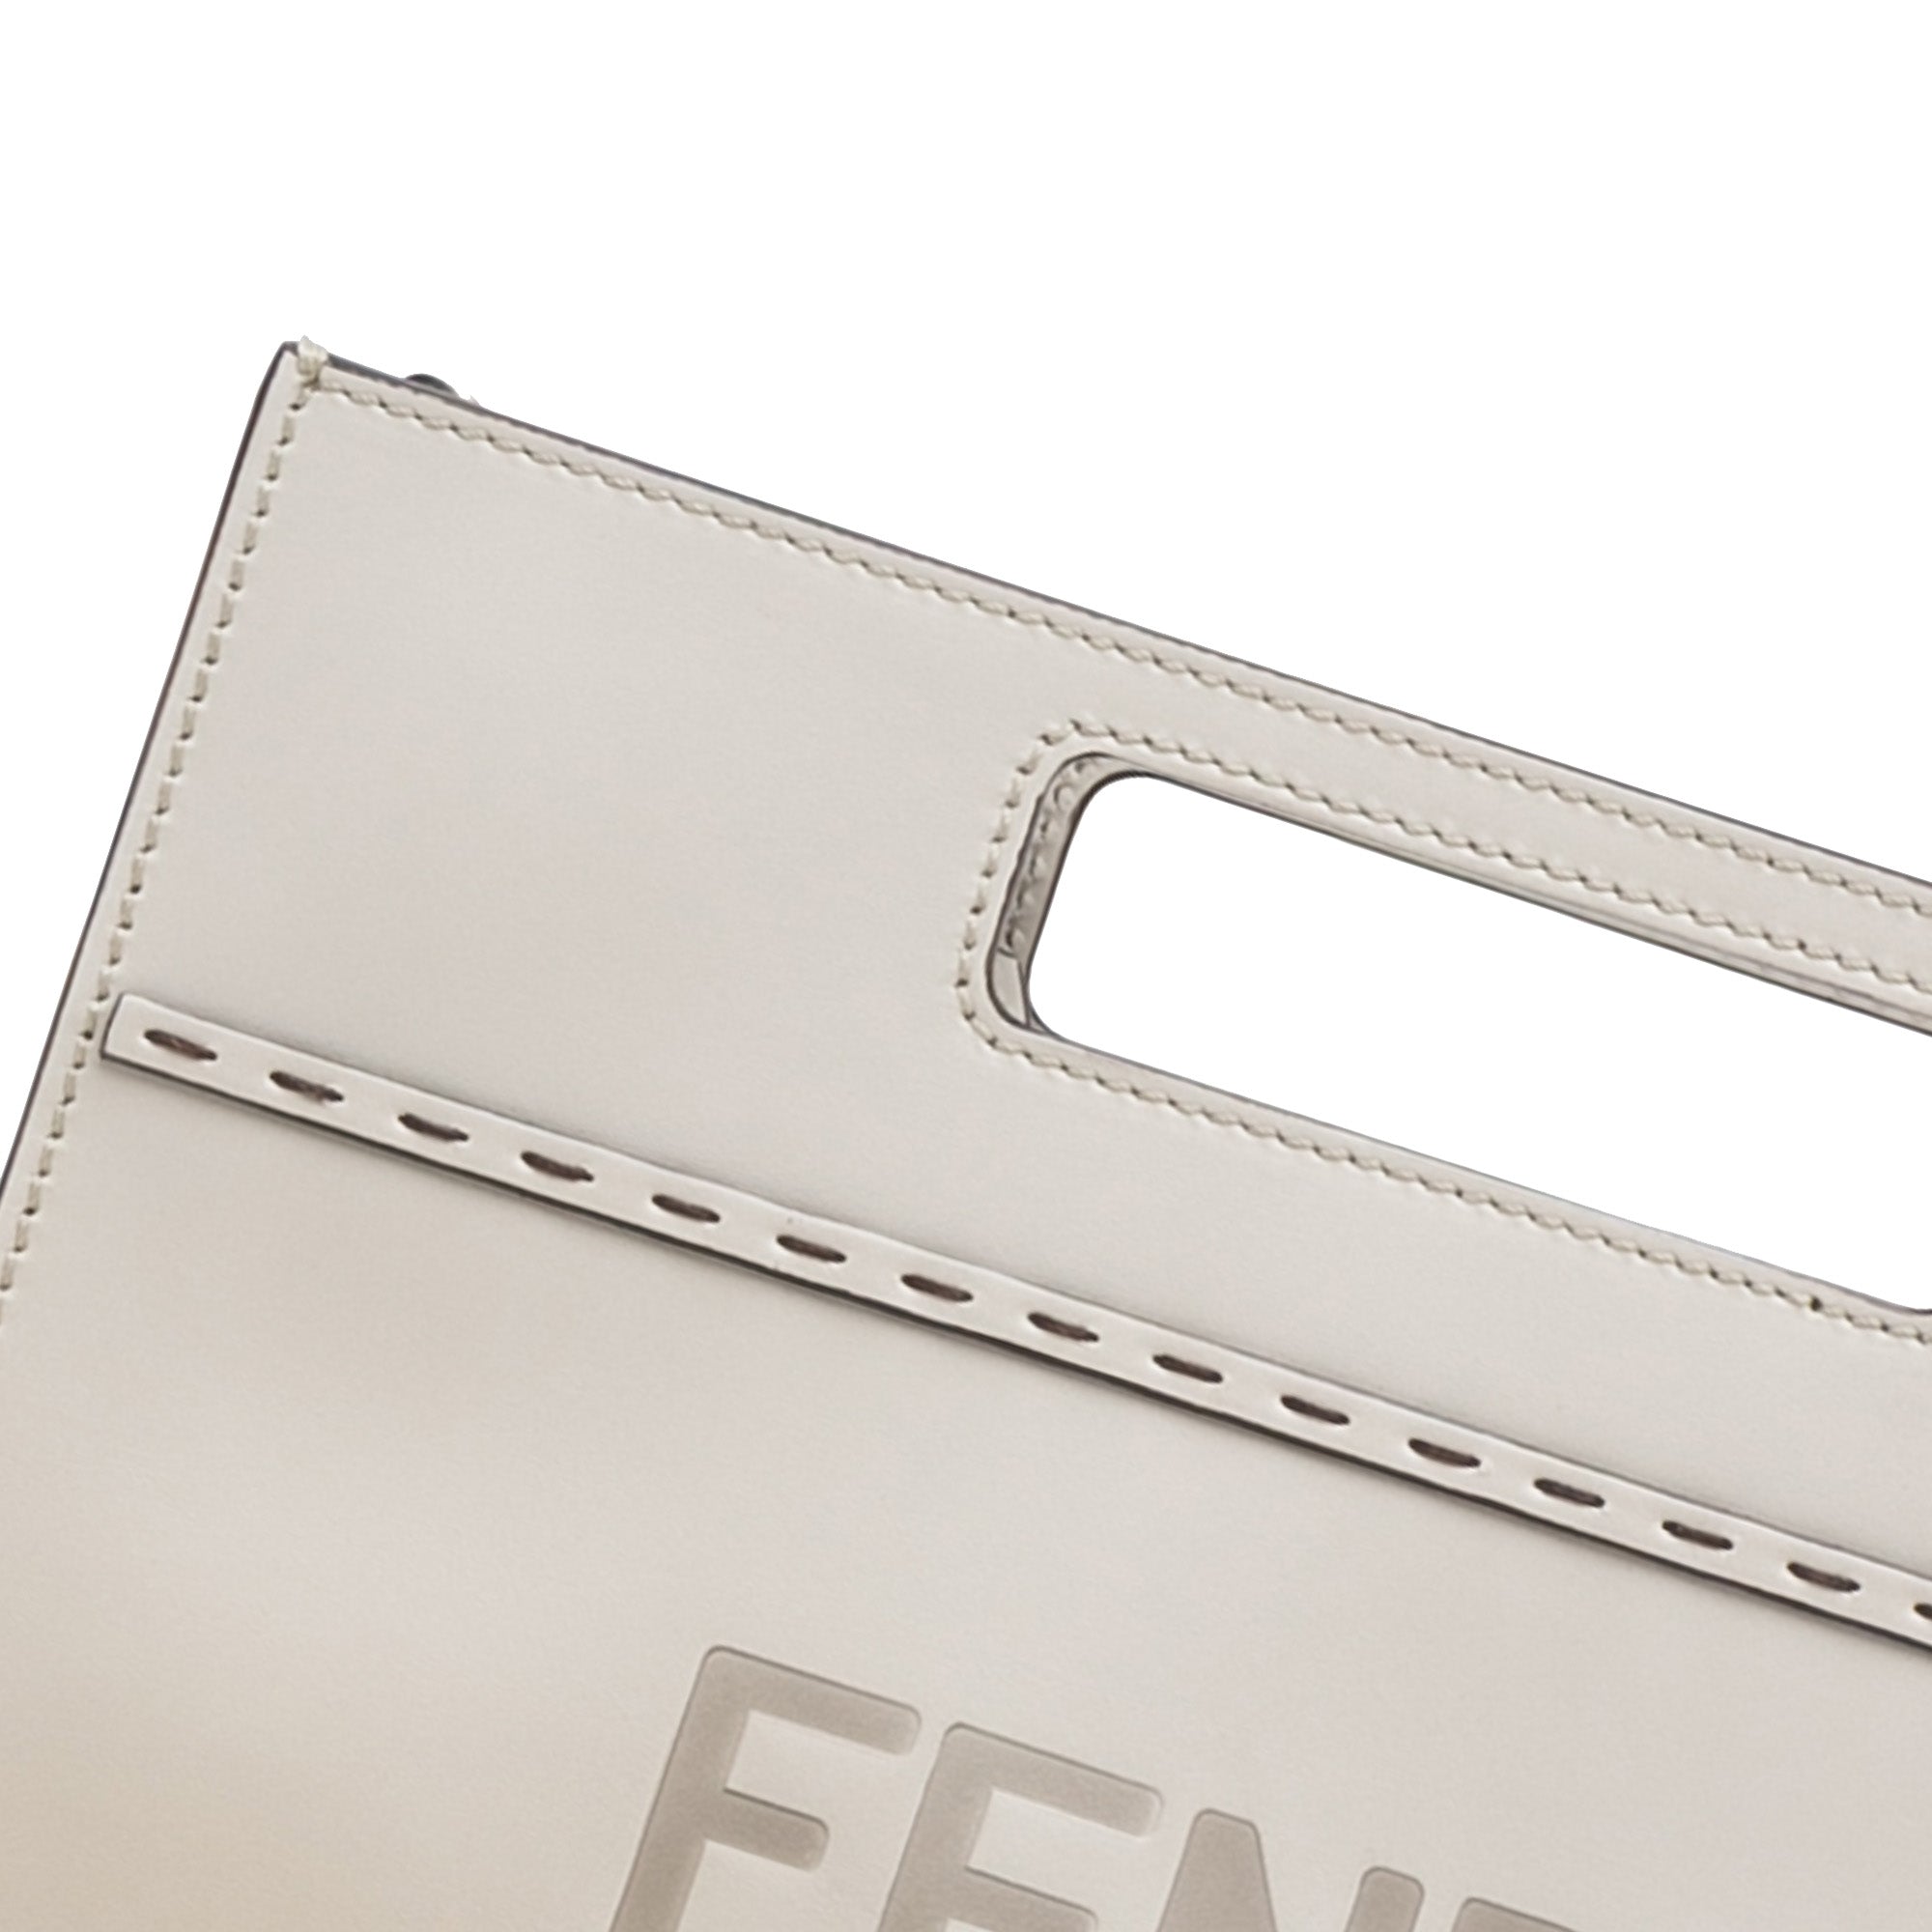 Fendi Pre-owned Logo-Debossed Tote Bag